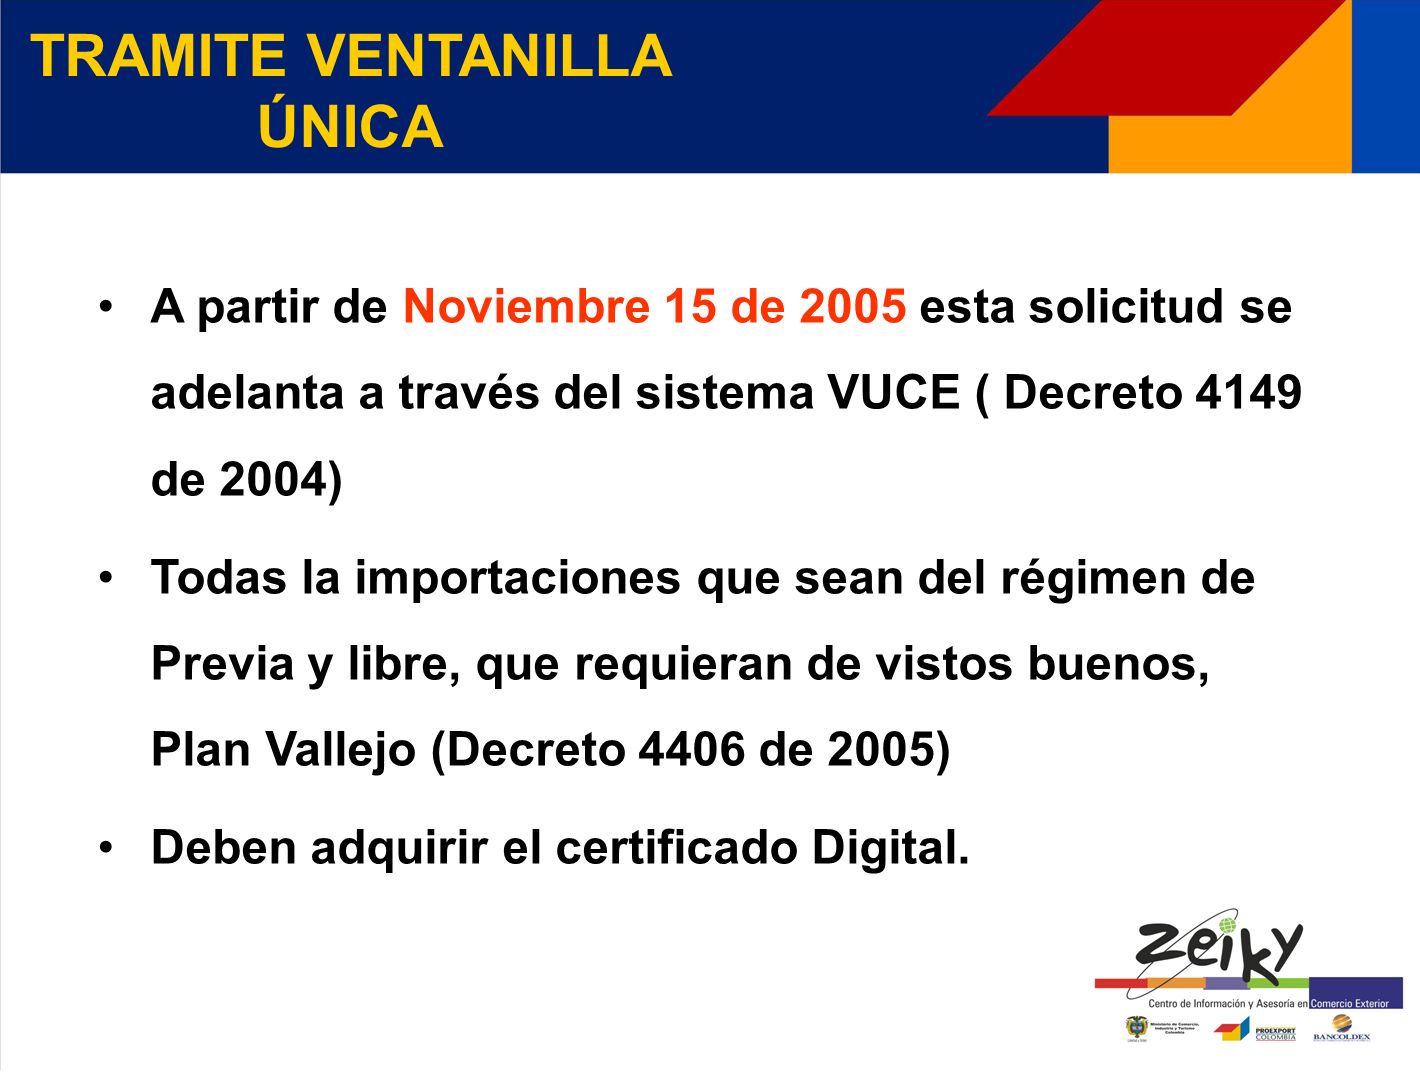 A partir de Noviembre 15 de 2005 esta solicitud se adelanta a través del sistema VUCE ( Decreto 4149 de 2004) Todas la importaciones que sean del régimen de Previa y libre, que requieran de vistos buenos, Plan Vallejo (Decreto 4406 de 2005) Deben adquirir el certificado Digital.